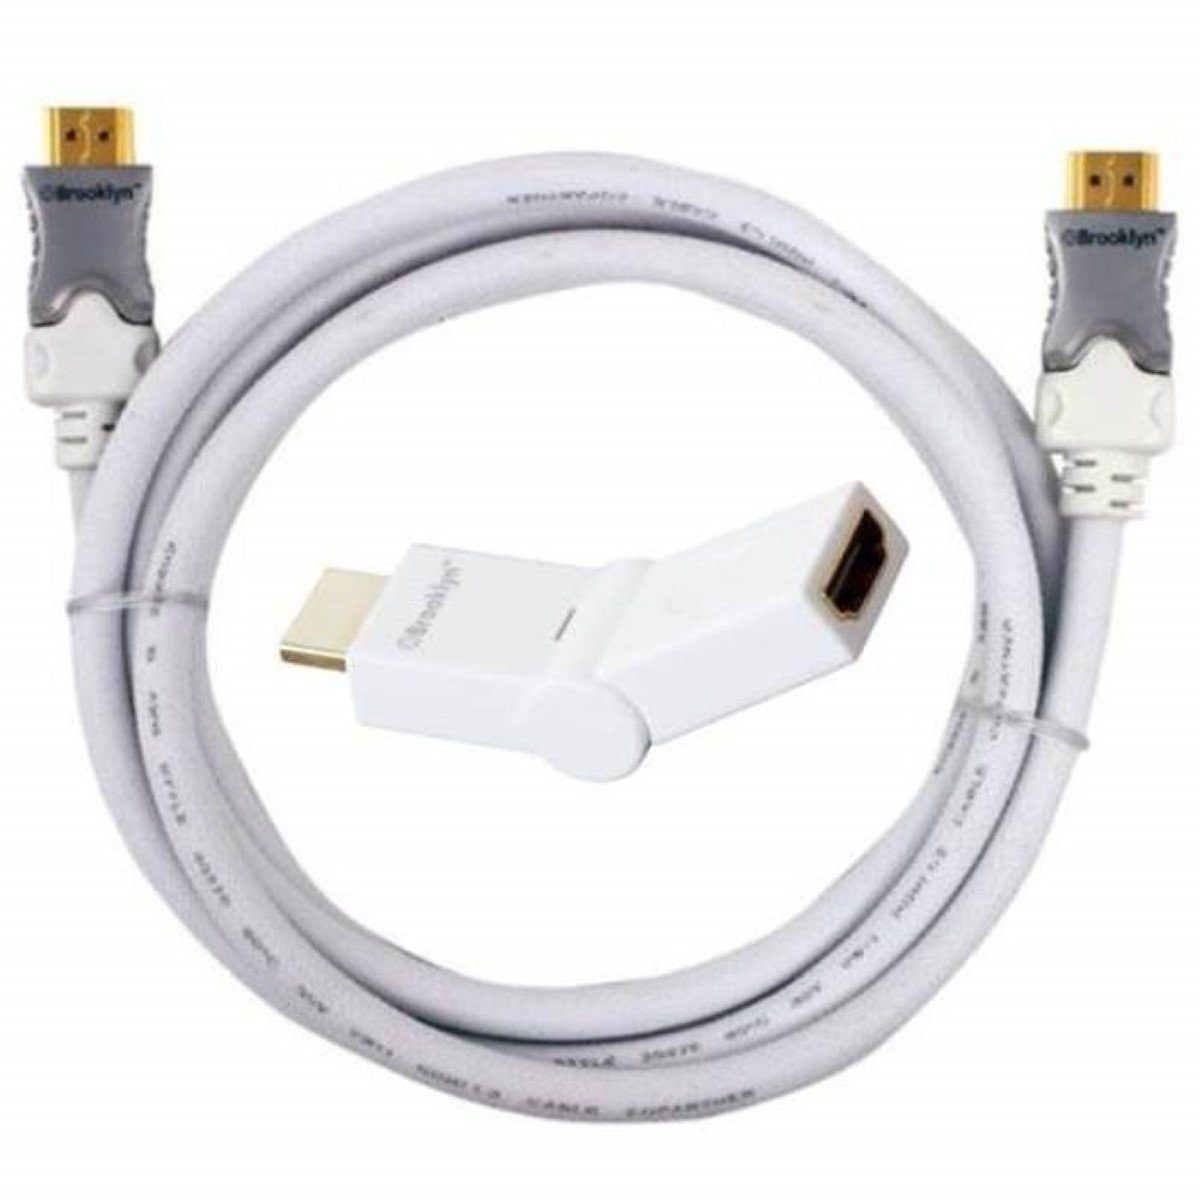 Brooklyn HDMI-Kabel 180° HDMI-Adapter Winkel-Stecker Video-Kabel, HDMI, (200 cm), Inkl. 180° HDMI-Adapter für 3D HD-TV Full-HD TV LCD LED PC Konsole